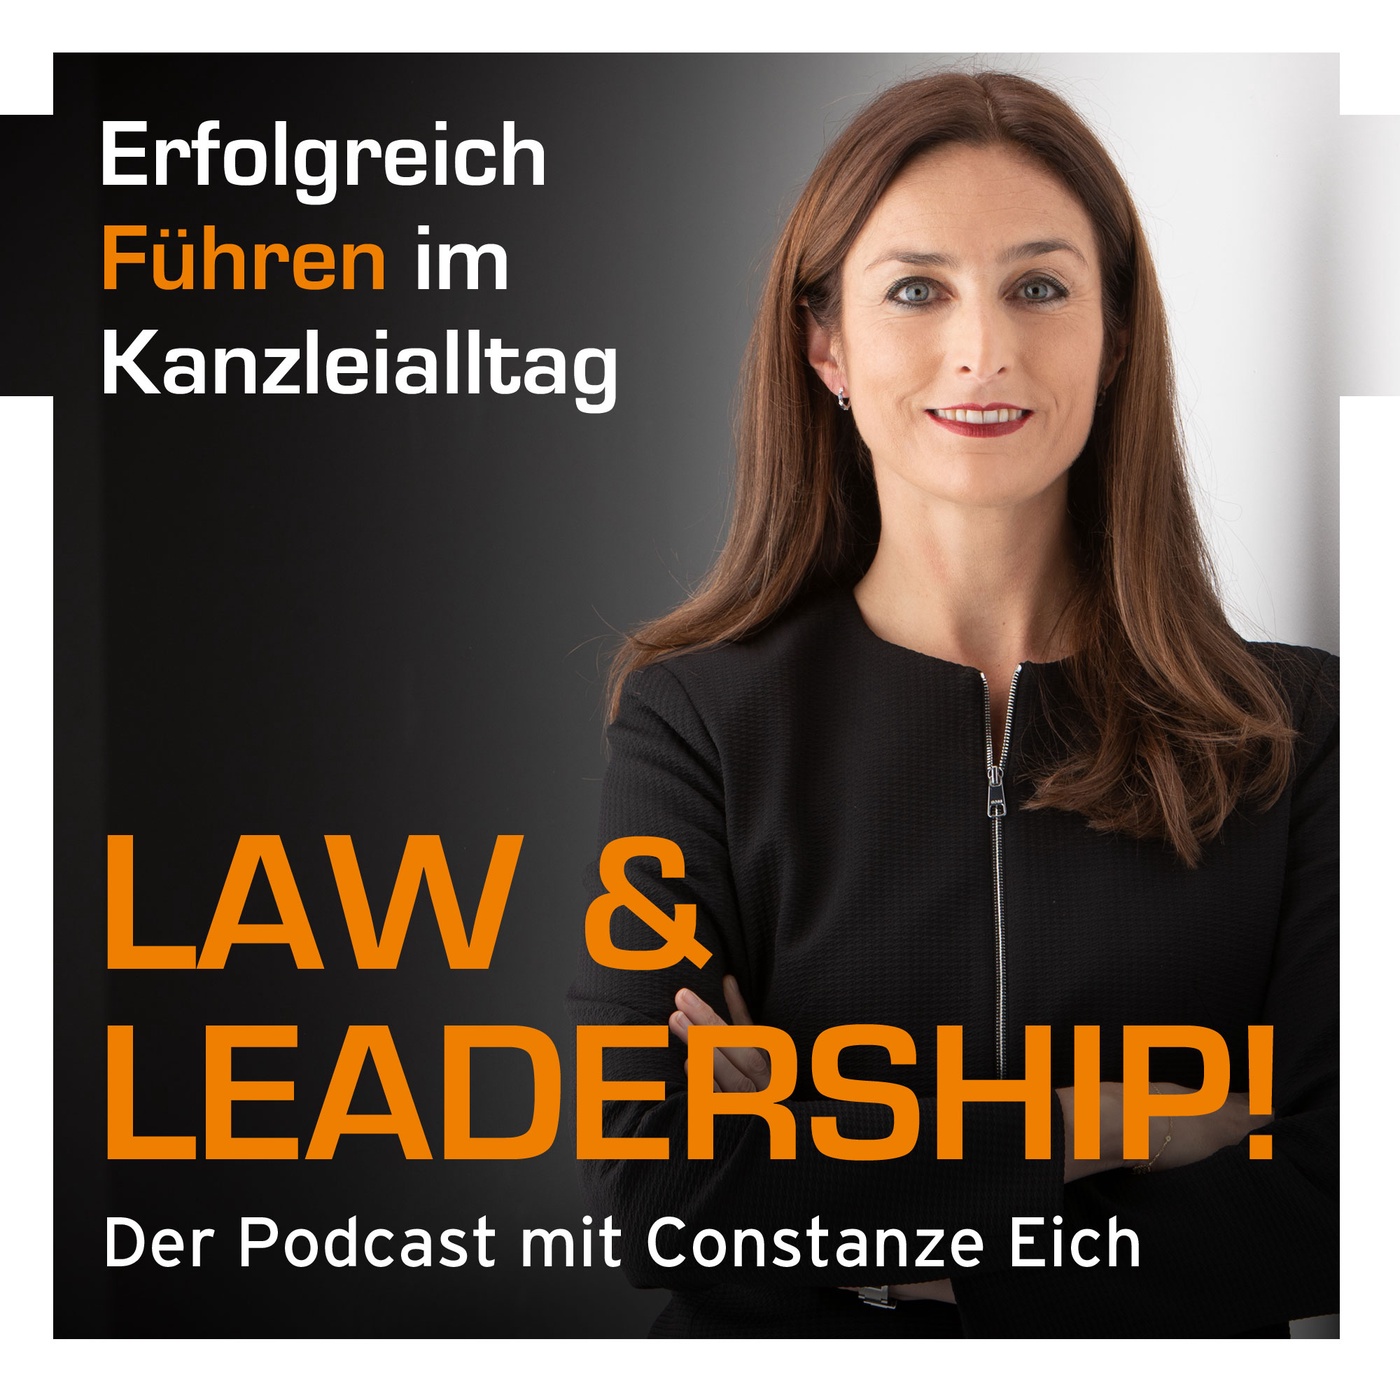 01 - Multi-Leadership - Warum alle Anwälte führen müssen